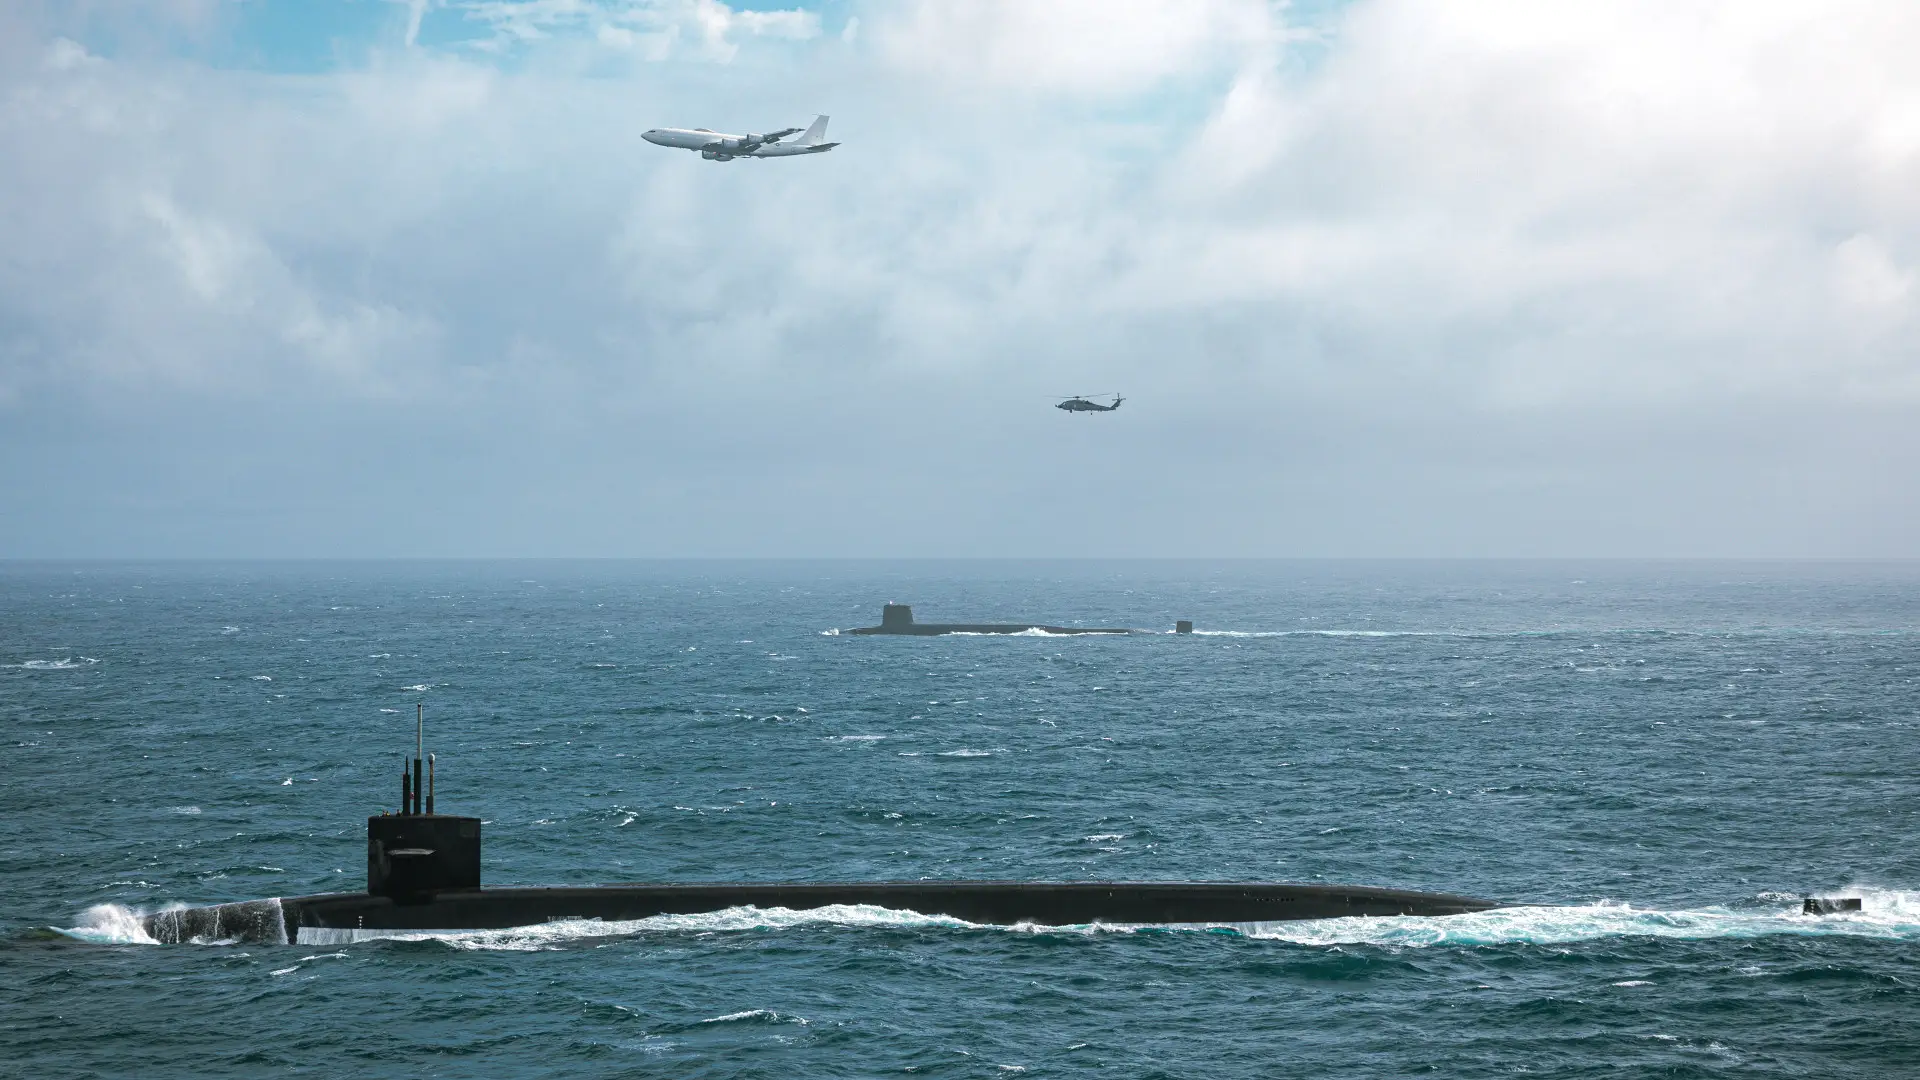 США і Велика Британія провели навчання із субмаринами USS Tennessee та Vanguard, які несуть ракети Trident II з ядерними боєголовками - над ними літав літак судного дня Boeing E-6B Mercury